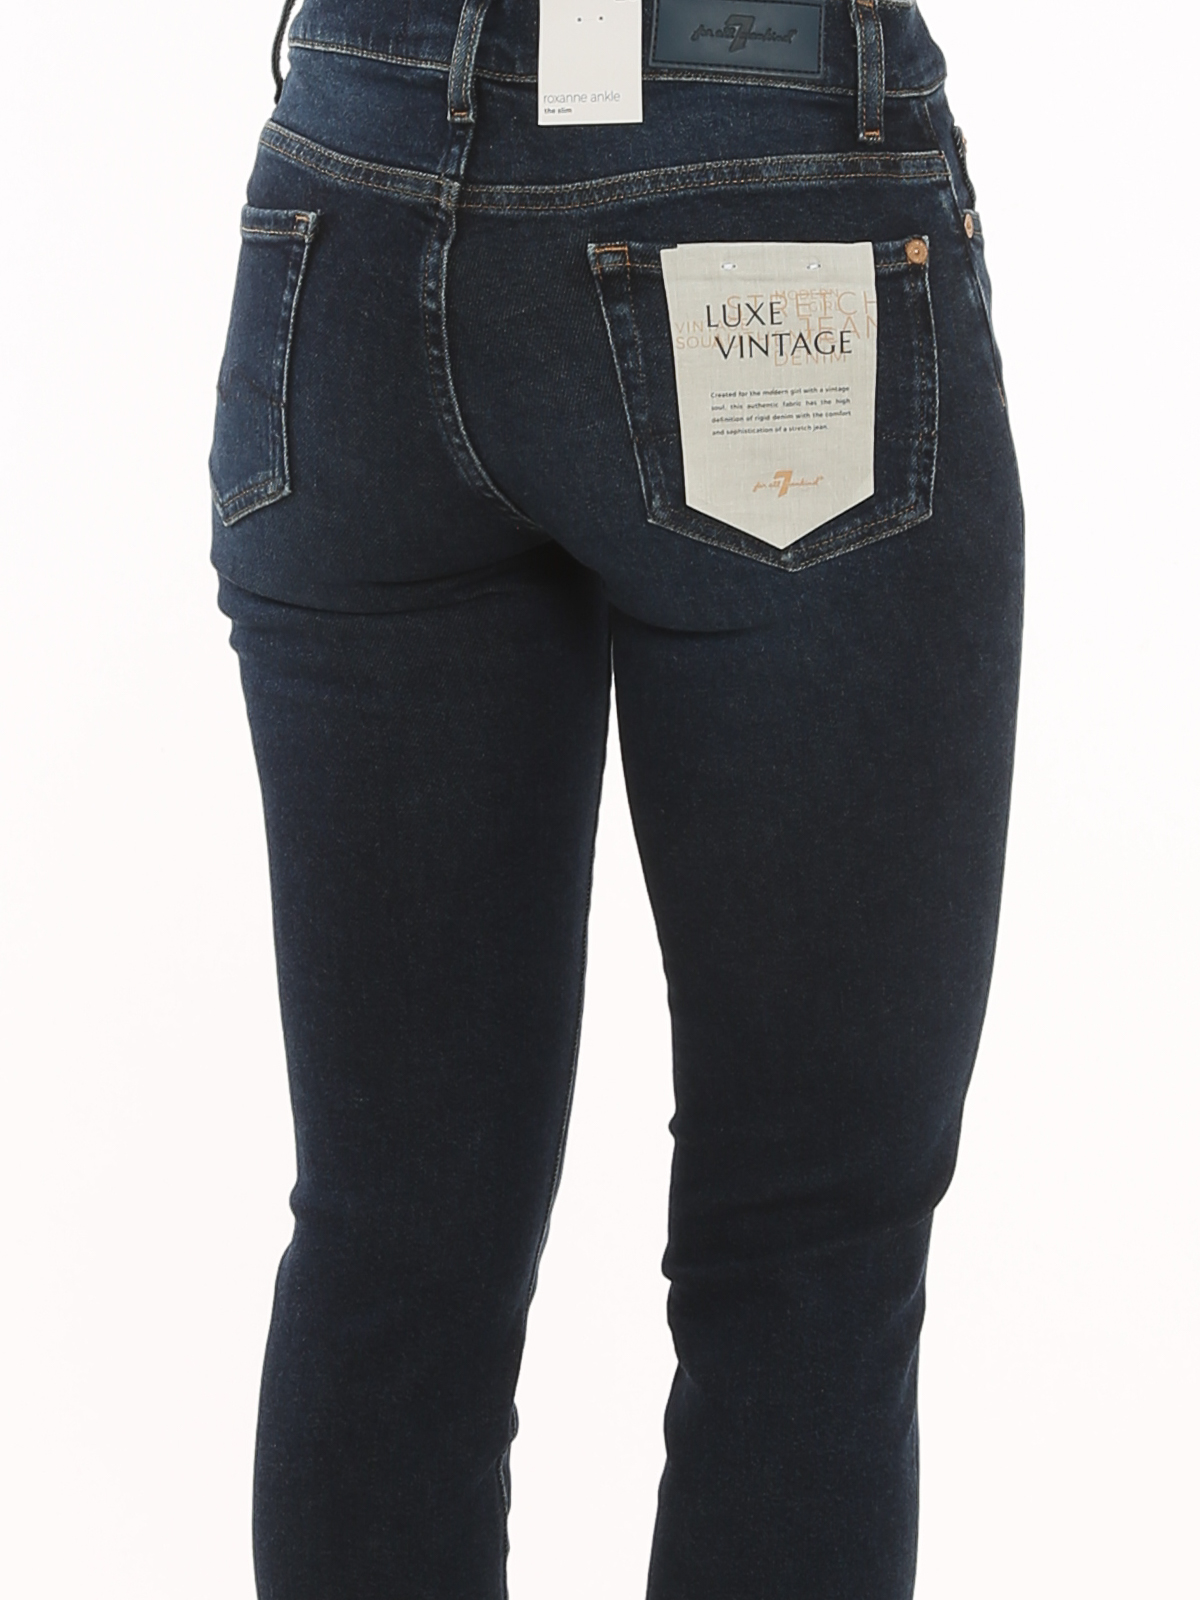 Nikke Haiku helbrede Skinny jeans 7 For All Mankind - Roxanne Ankle jeans - JSVYA910VH